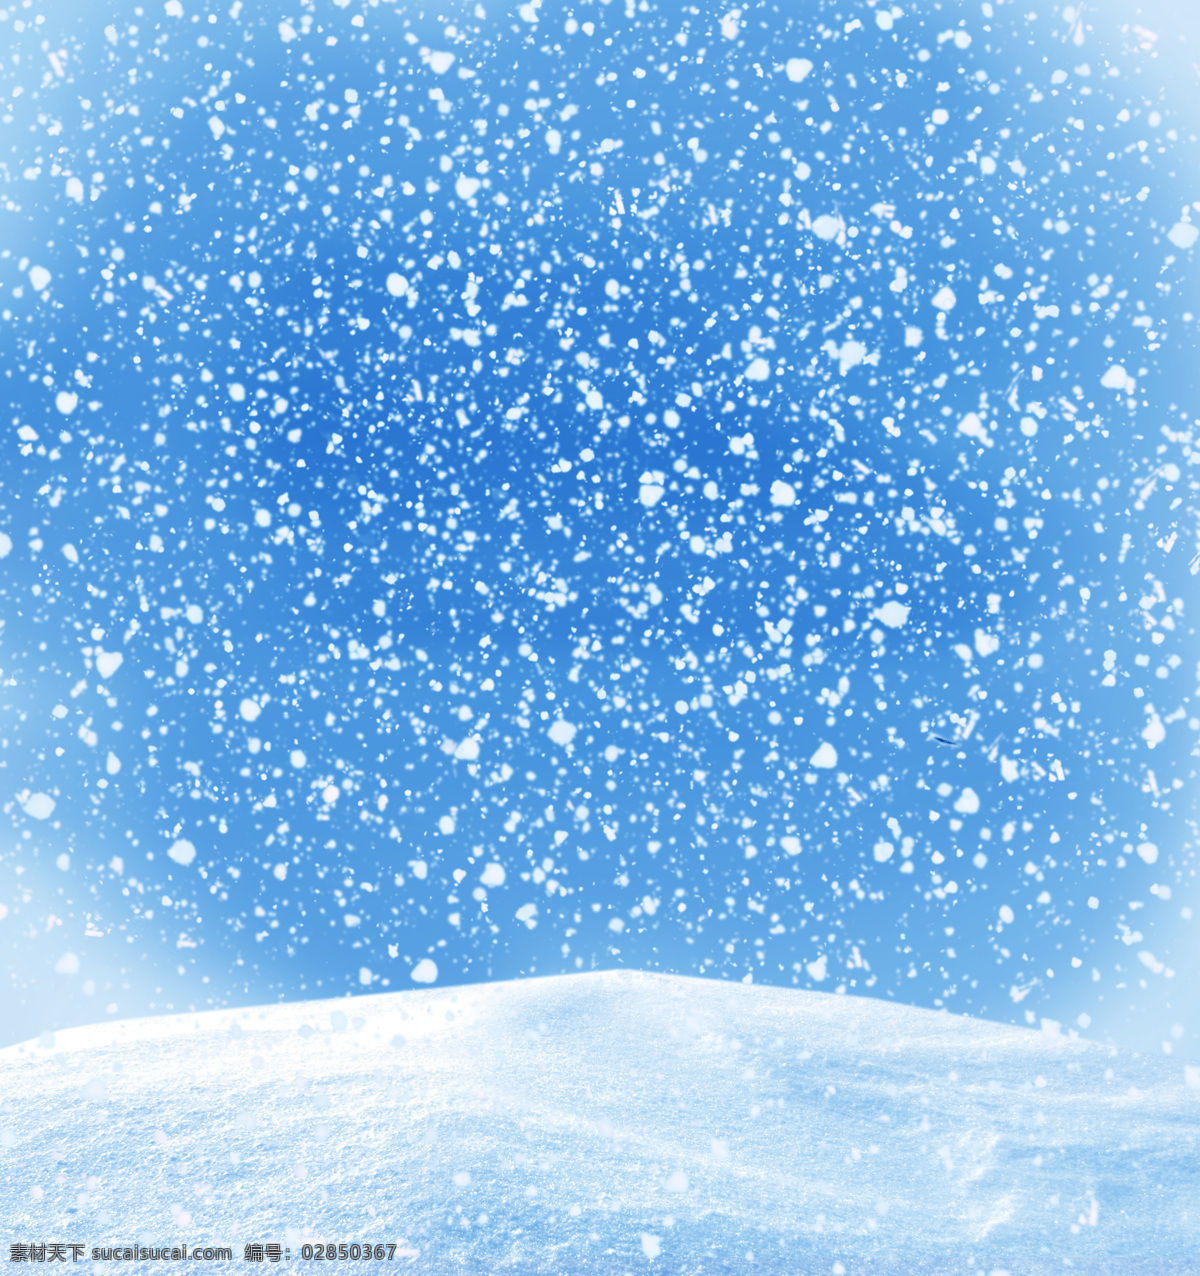 飘落 雪花 美景 冬季美景 蓝色美景 漂亮景色 风景摄影 雪地风景 自然风景 山水风景 风景图片